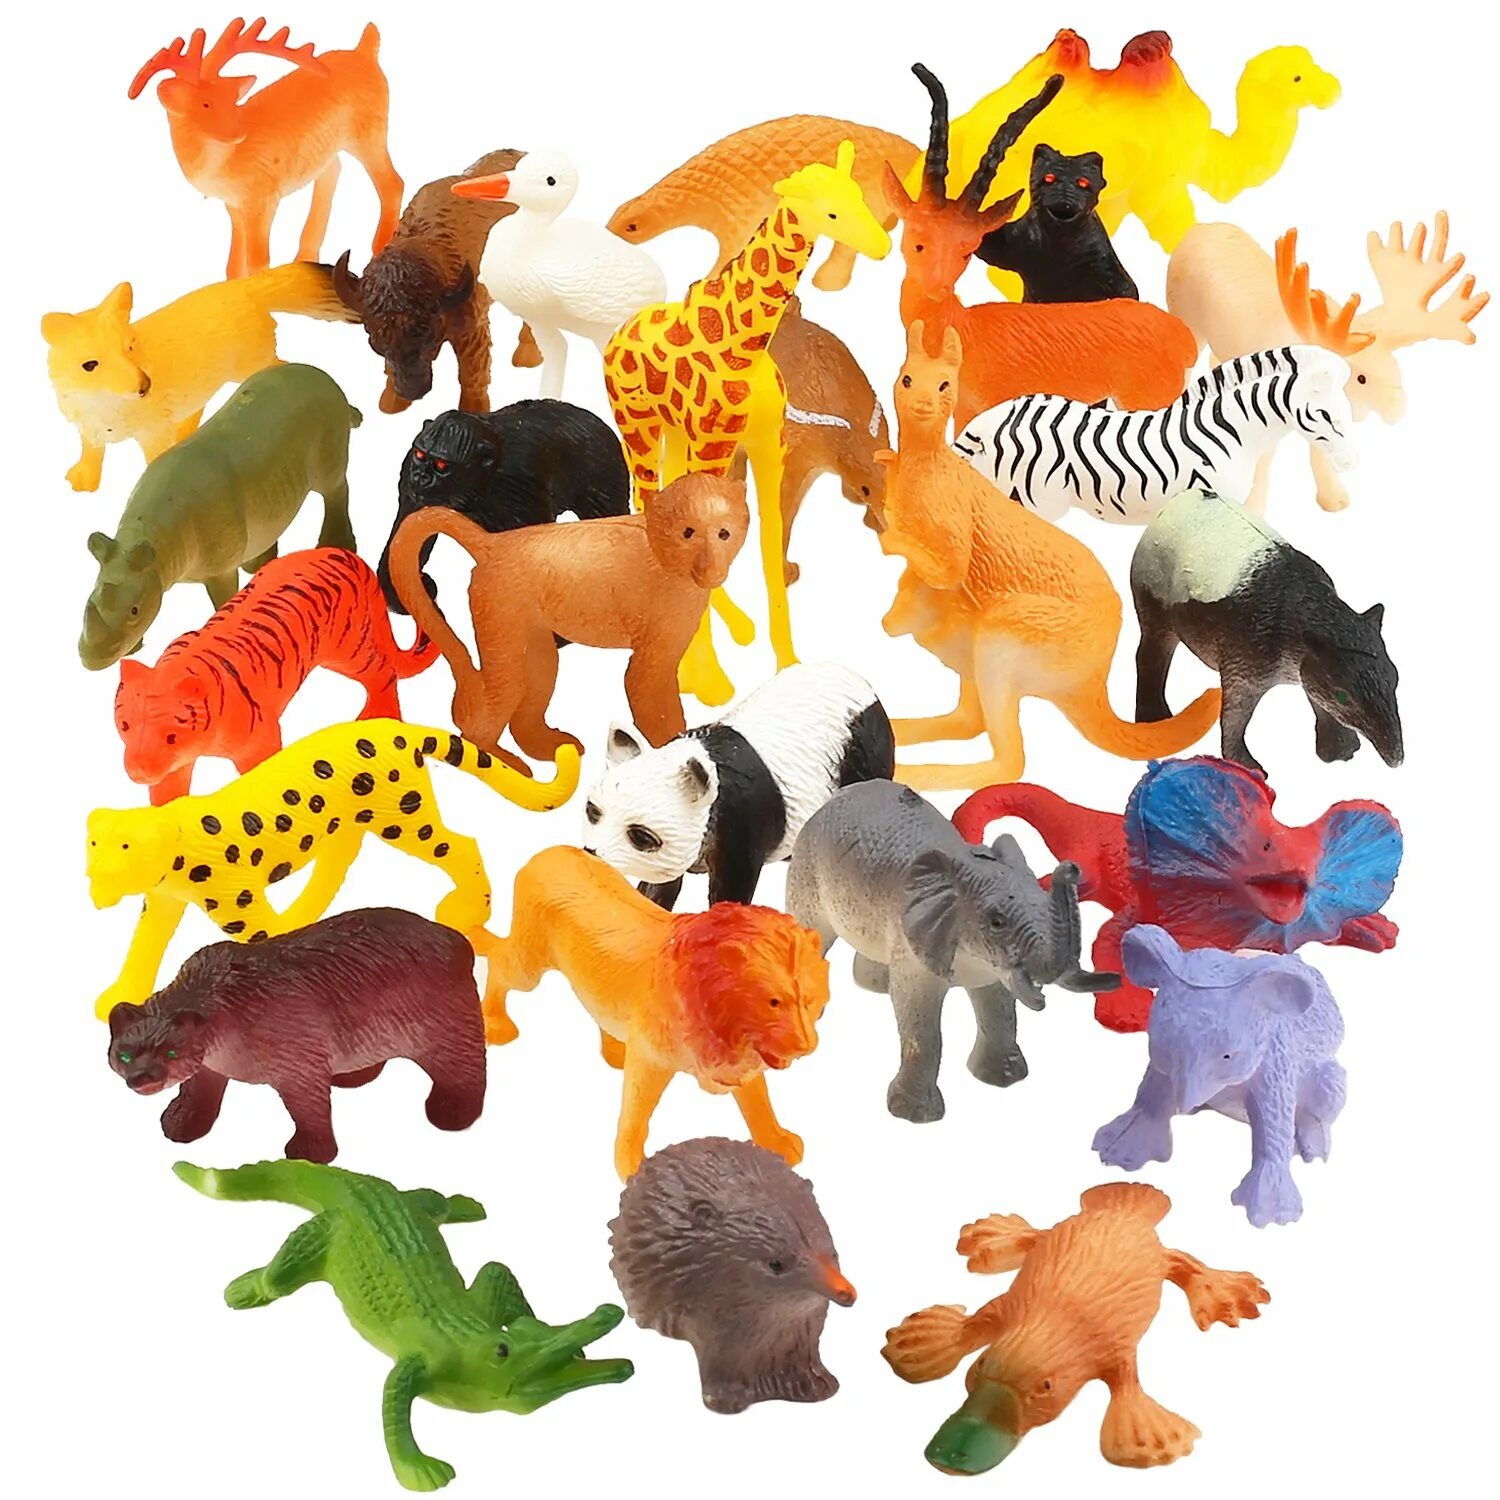 Animals review. ПЭТ Энималс игрушка. Набор игрушек животных Pianet Wild сафари. DEAGOSTINI игрушки Wild animals Figure. Пластмассовые звери.